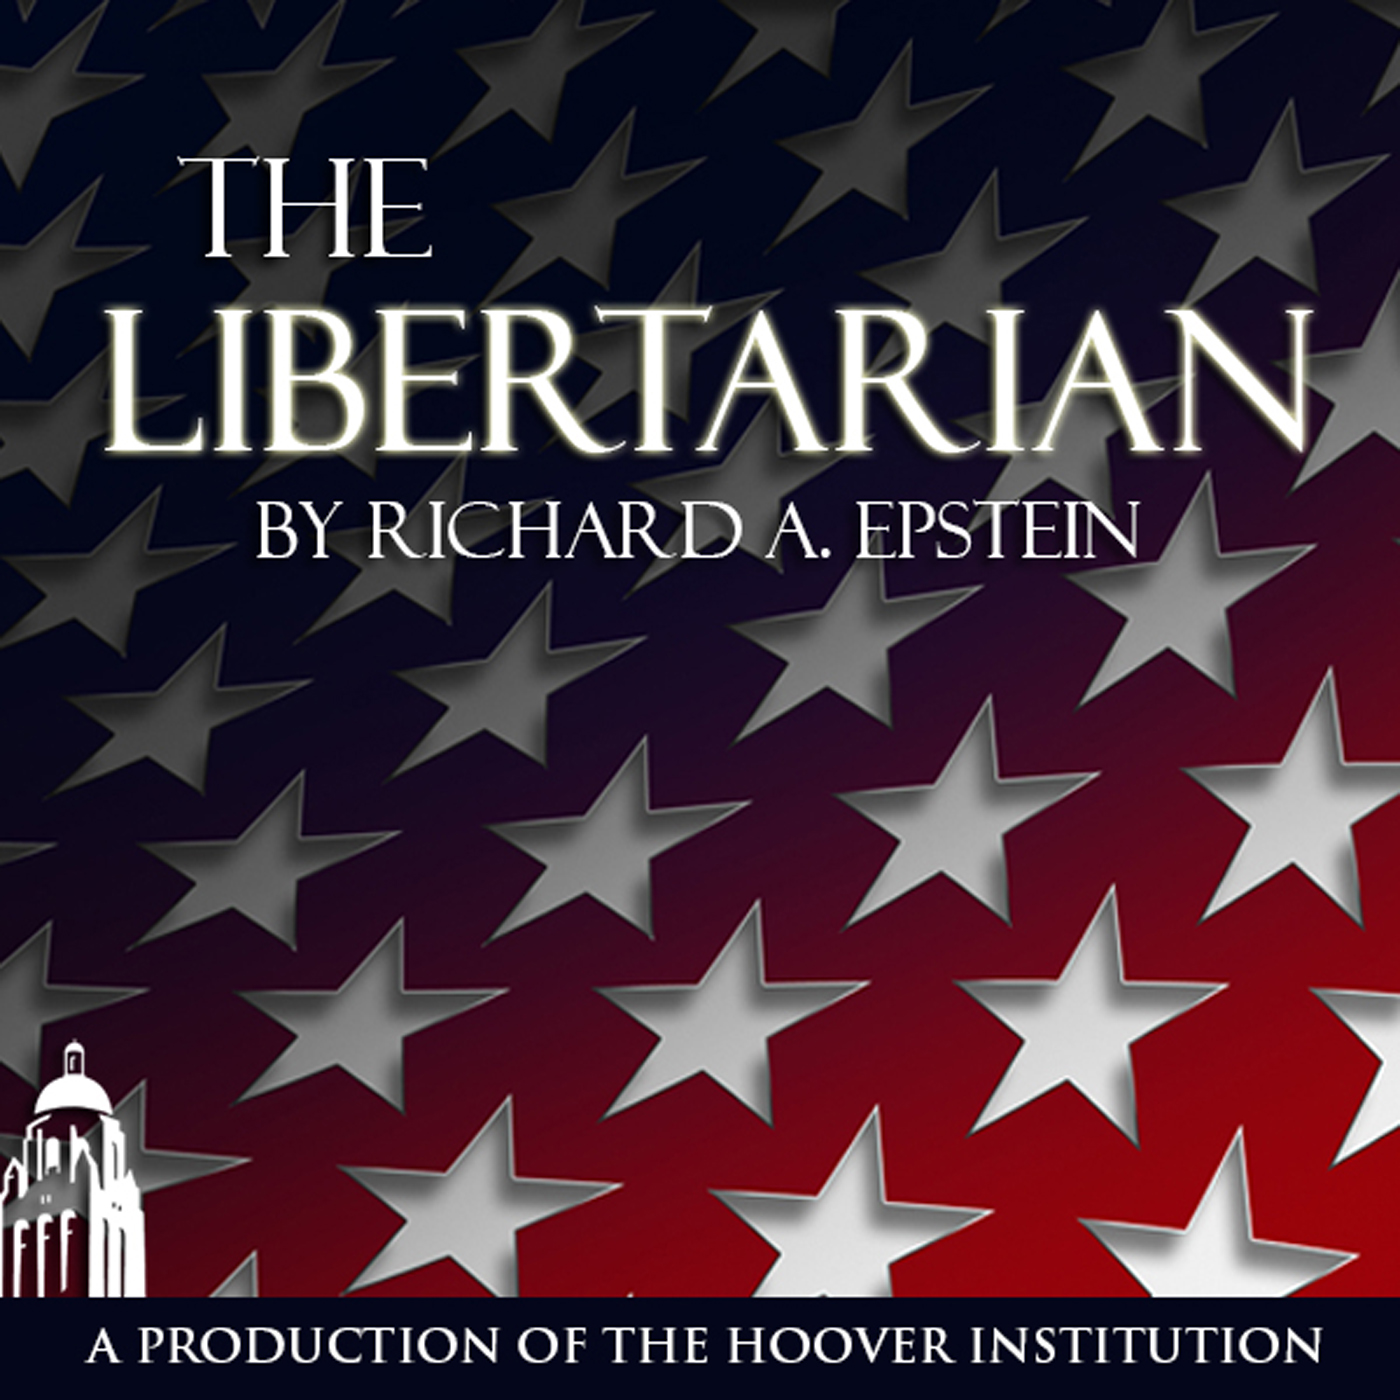 Religious Liberty and the Masterpiece verdict